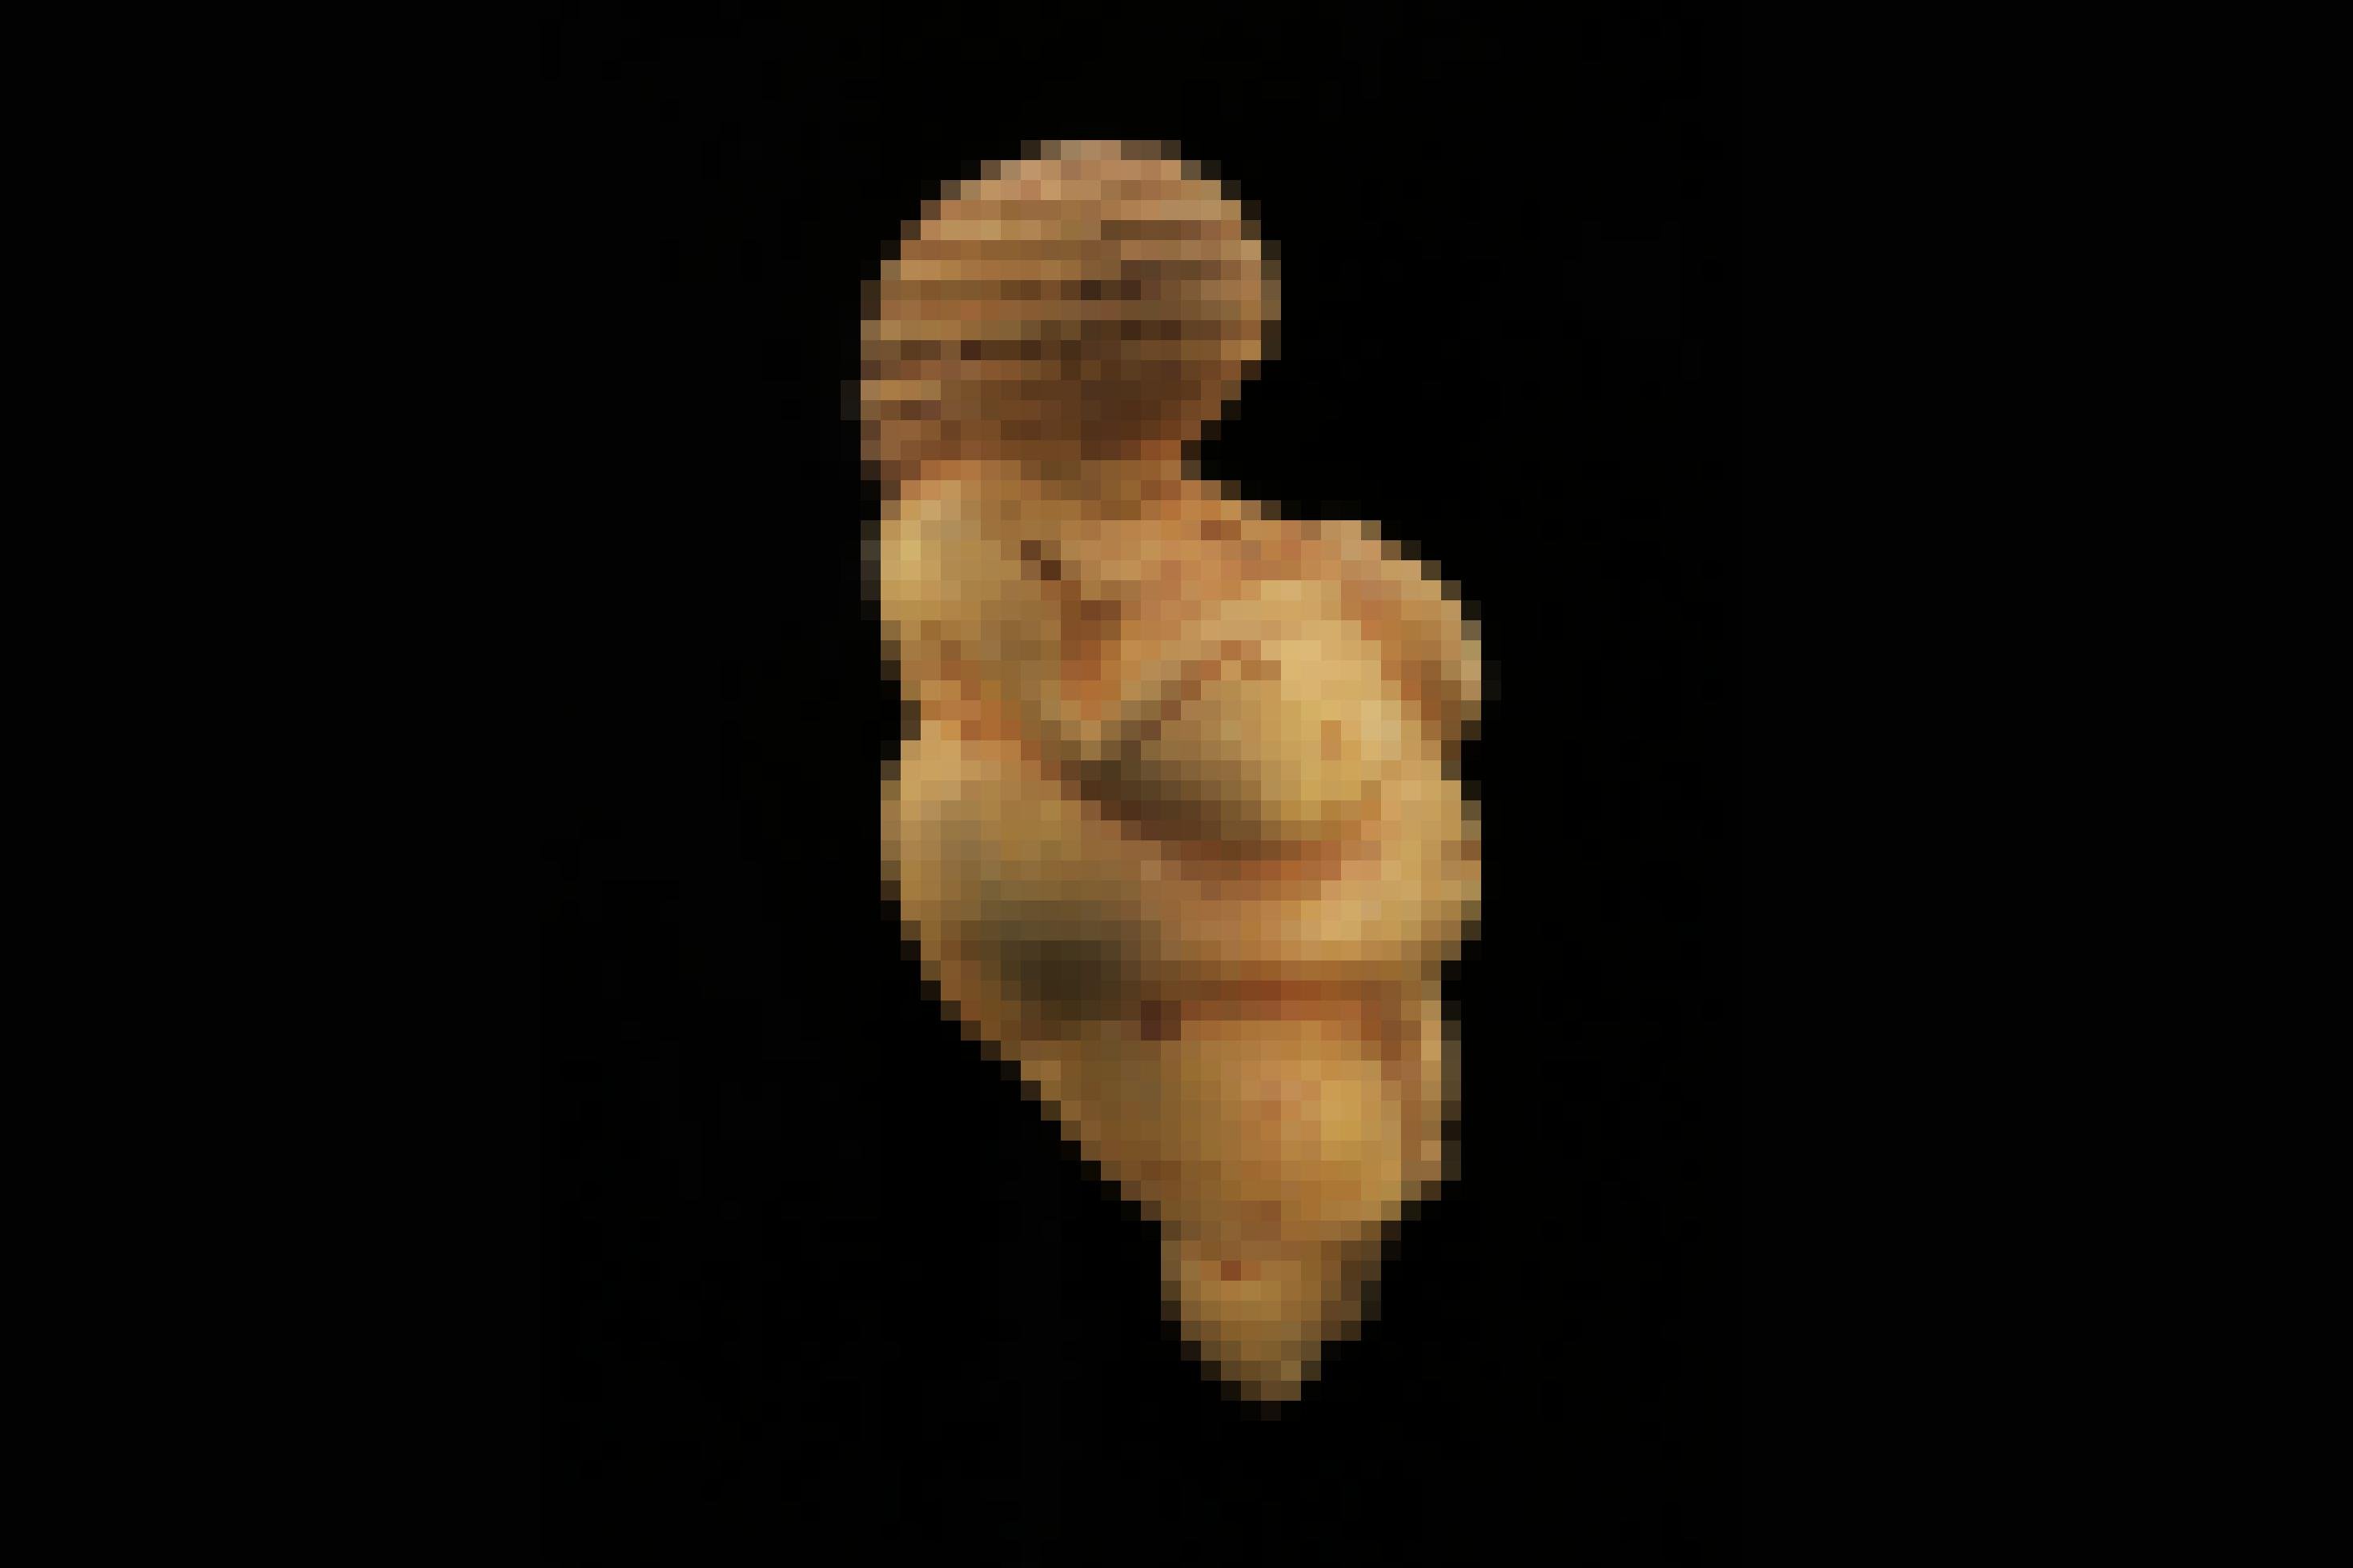 Das Foto zeigt eine gelbliche Frauenfigur vor schwarzem Hintergrund, deren Körperform sehr füllig ist. Sie weist dicke Oberschenkel, viel Körperfett und üppige Brüste auf. Weder Füße noch ein Gesicht sind zu erkennen, jedoch eine kunstvoll geflochtene Haarpracht oder Bedeckung um den Kopf herum.